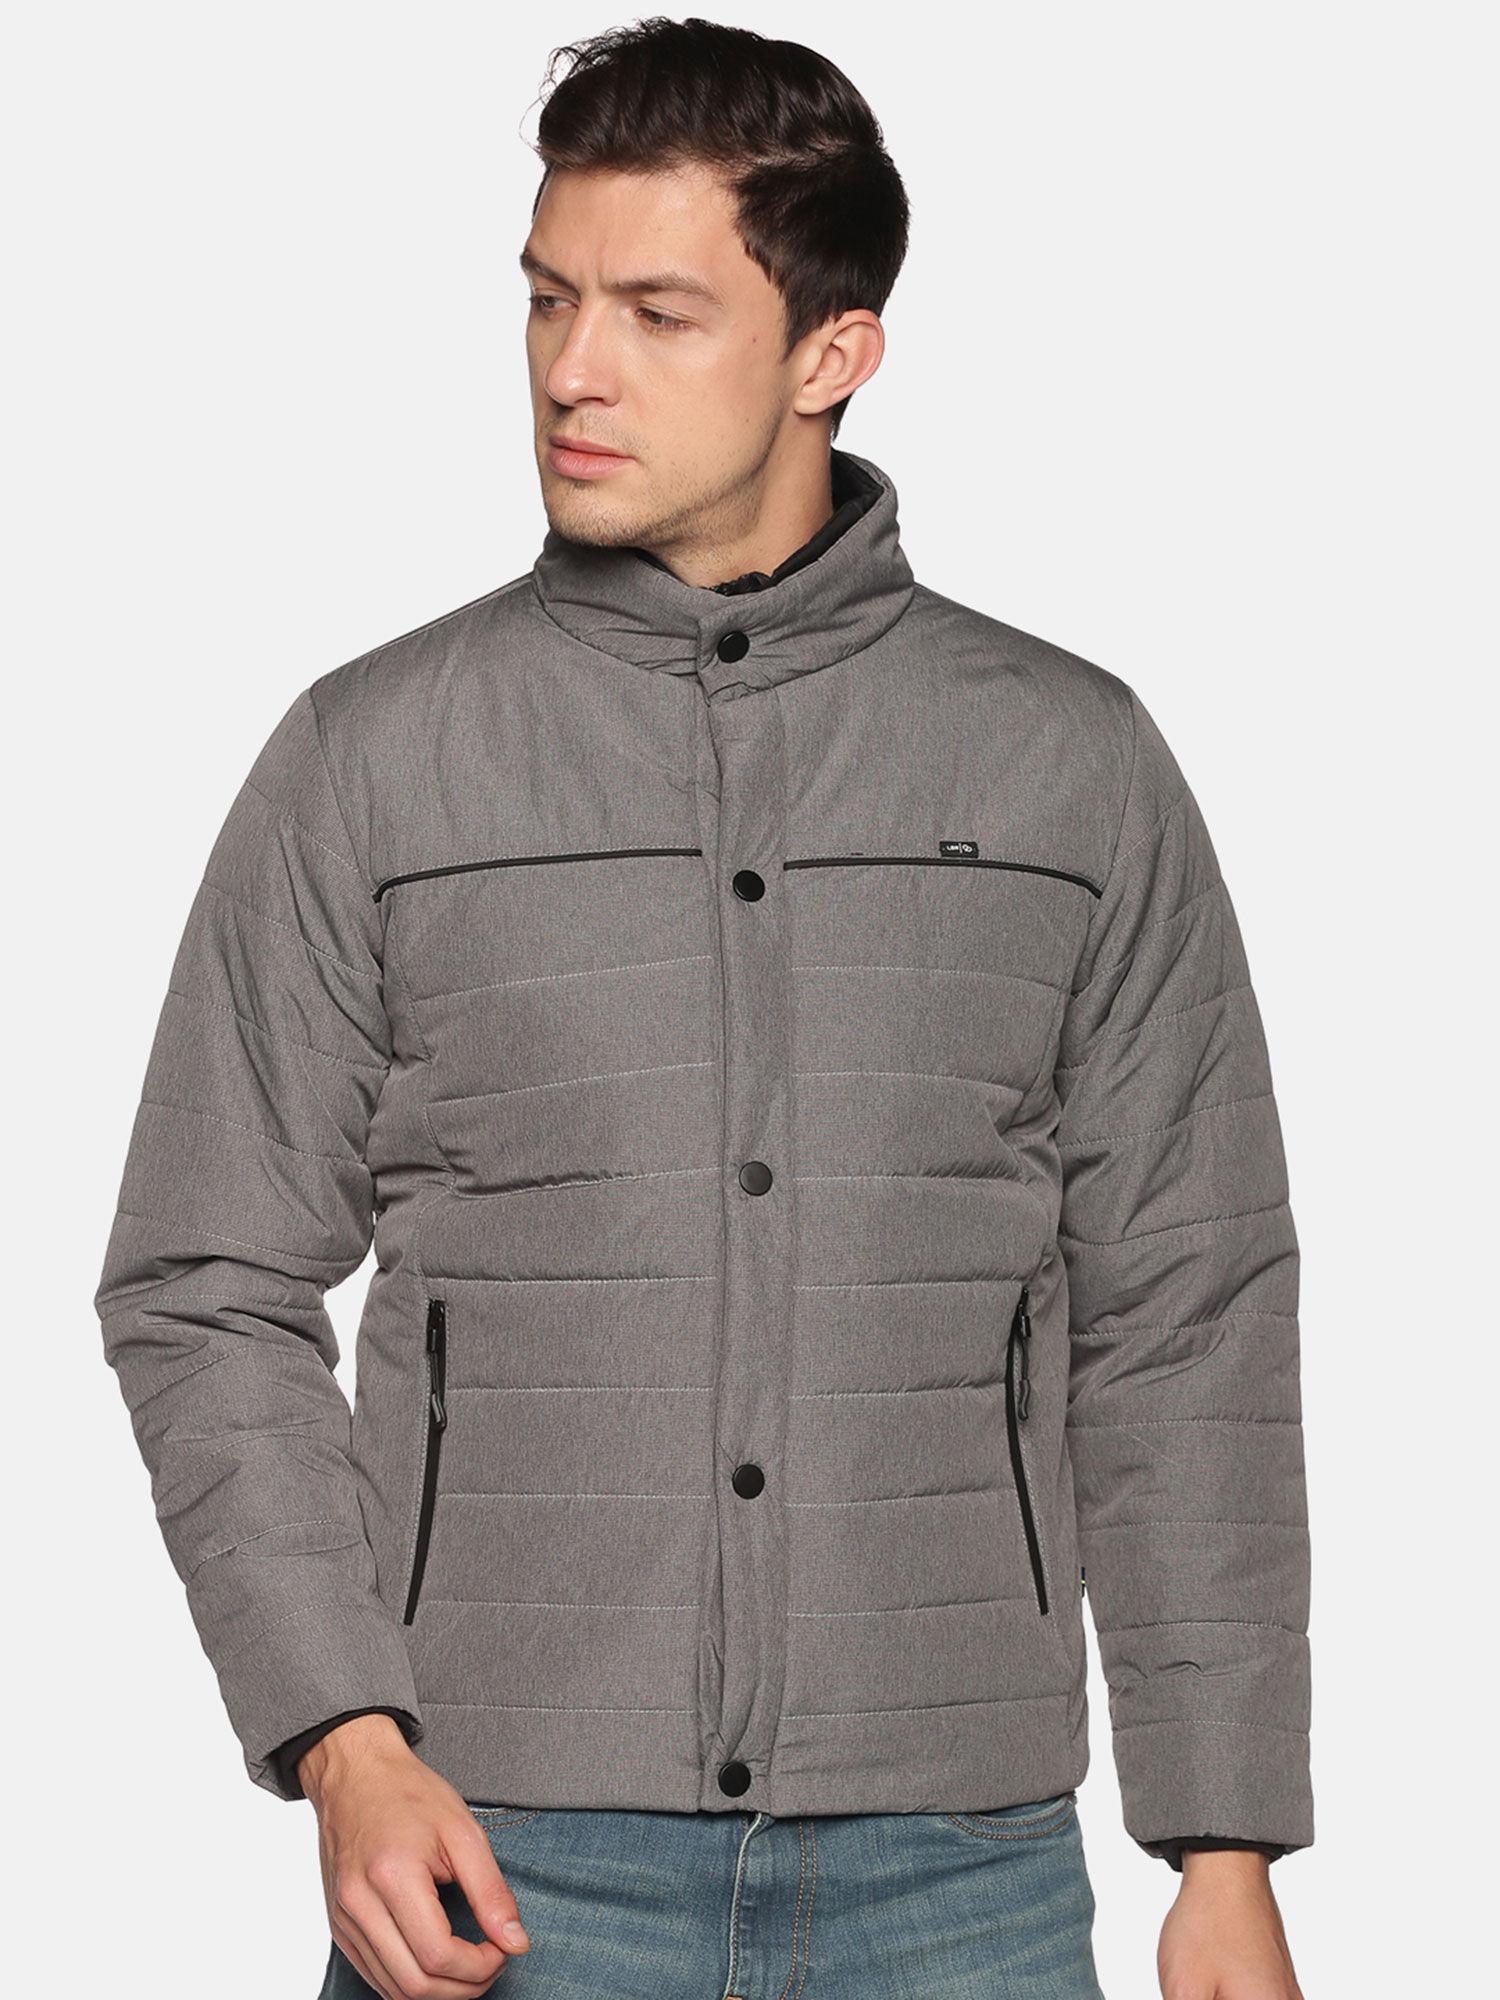 men's-casual-grey-solid-jacket